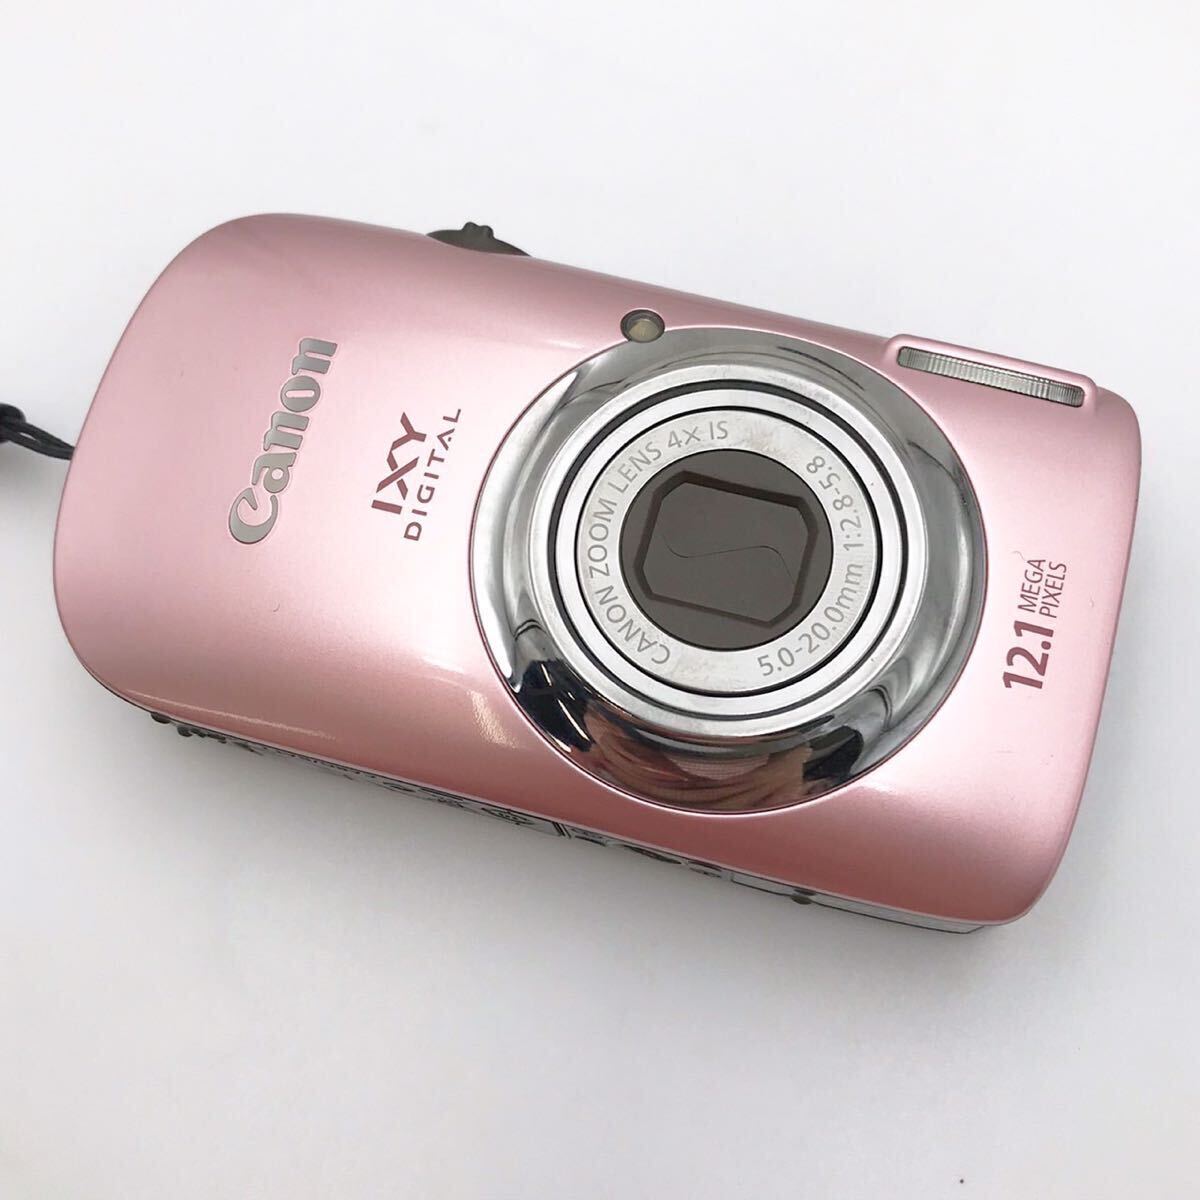 Canon キャノン キヤノン IXY DIGITAL 510 IS 小型 デジタルカメラ デジカメ コンパクト カメラ ピンク 動作確認済 箱無し【NK5888】_画像2